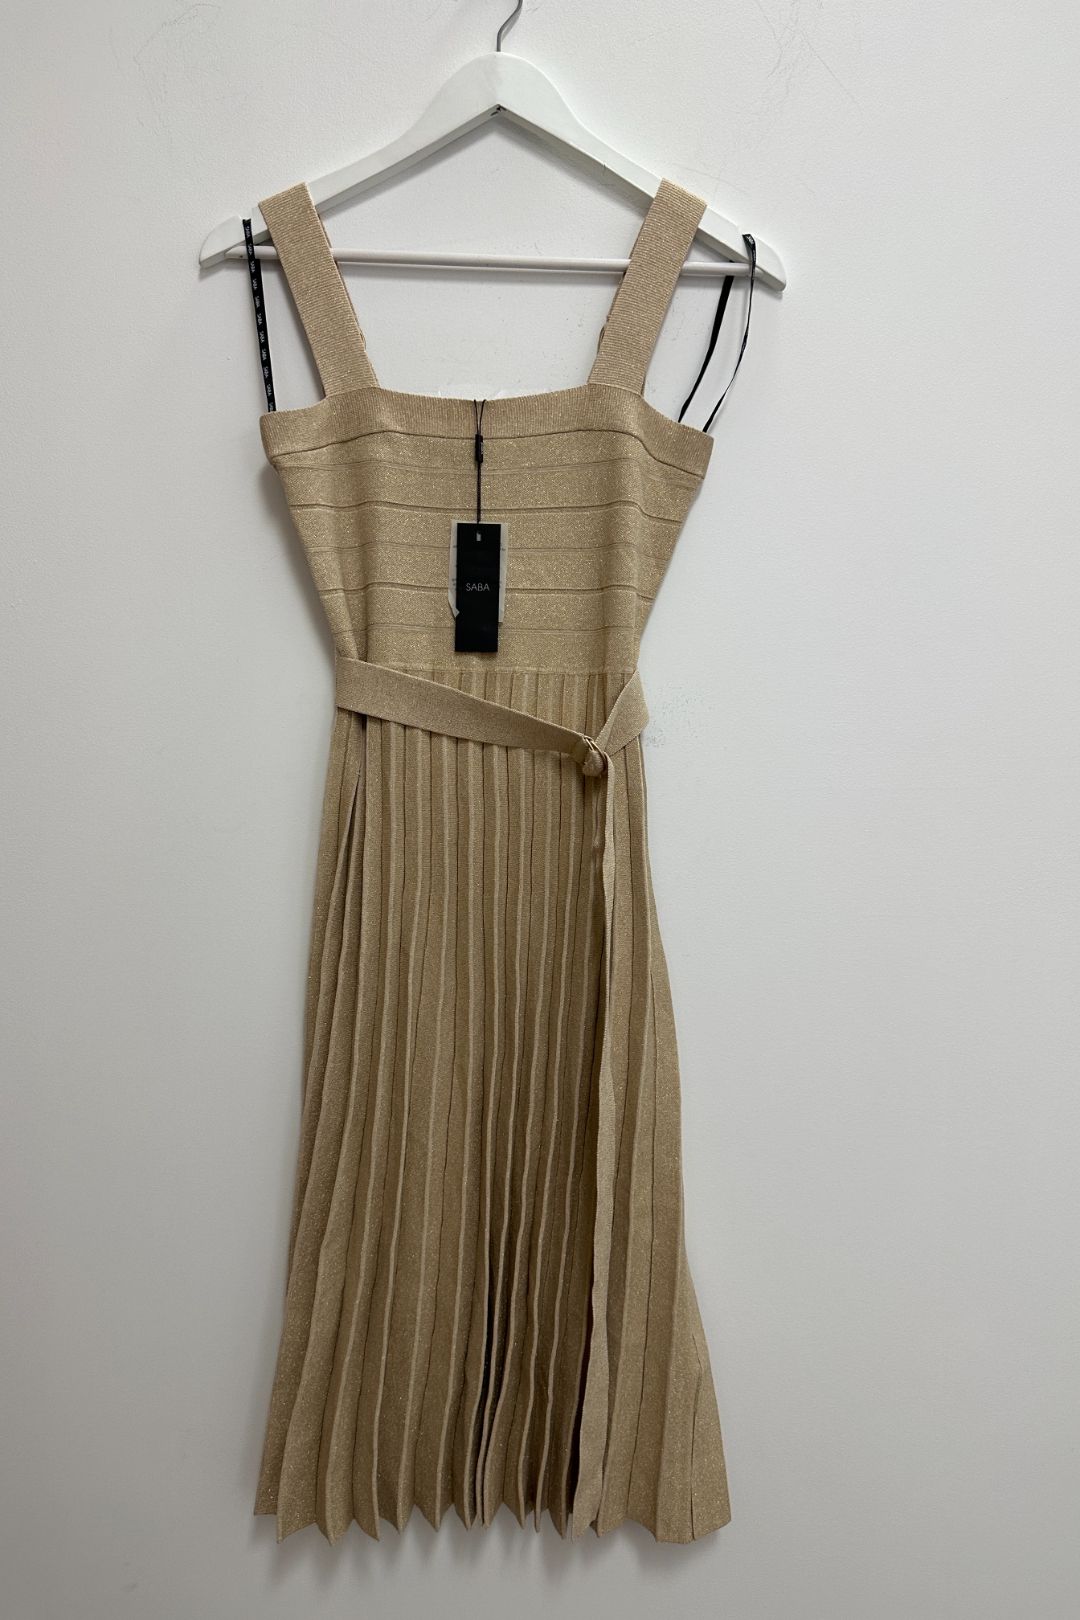 Saba Rina Metallic Gold Knit Dress